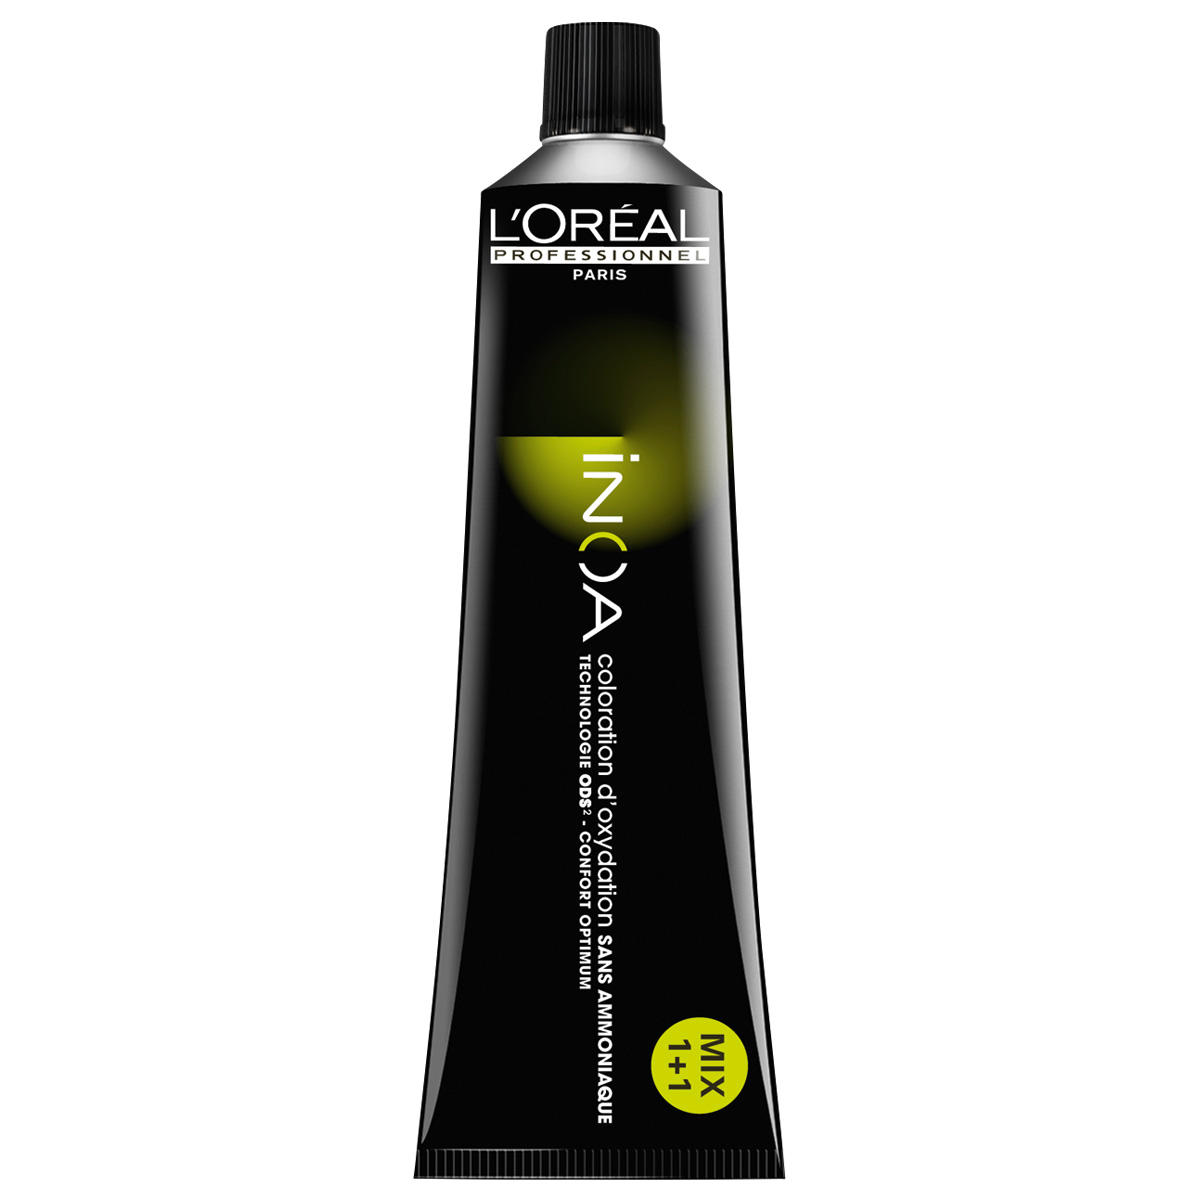 L'Oréal Professionnel Paris Coloration 7,18 Biondo Medio Cenere Moka, Tubo 60 ml